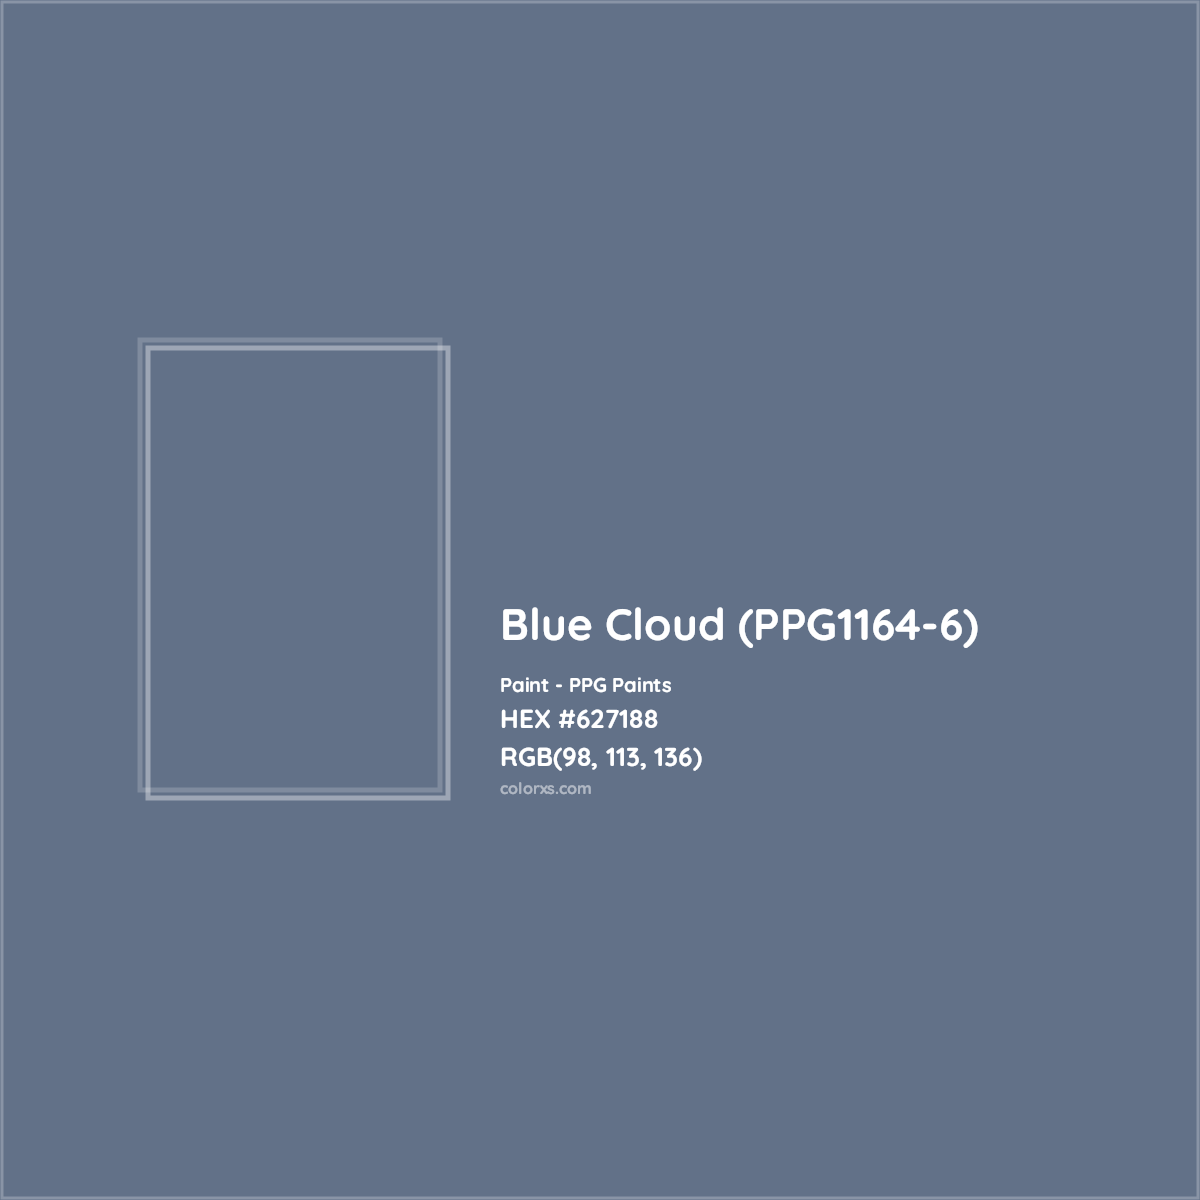 HEX #627188 Blue Cloud (PPG1164-6) Paint PPG Paints - Color Code